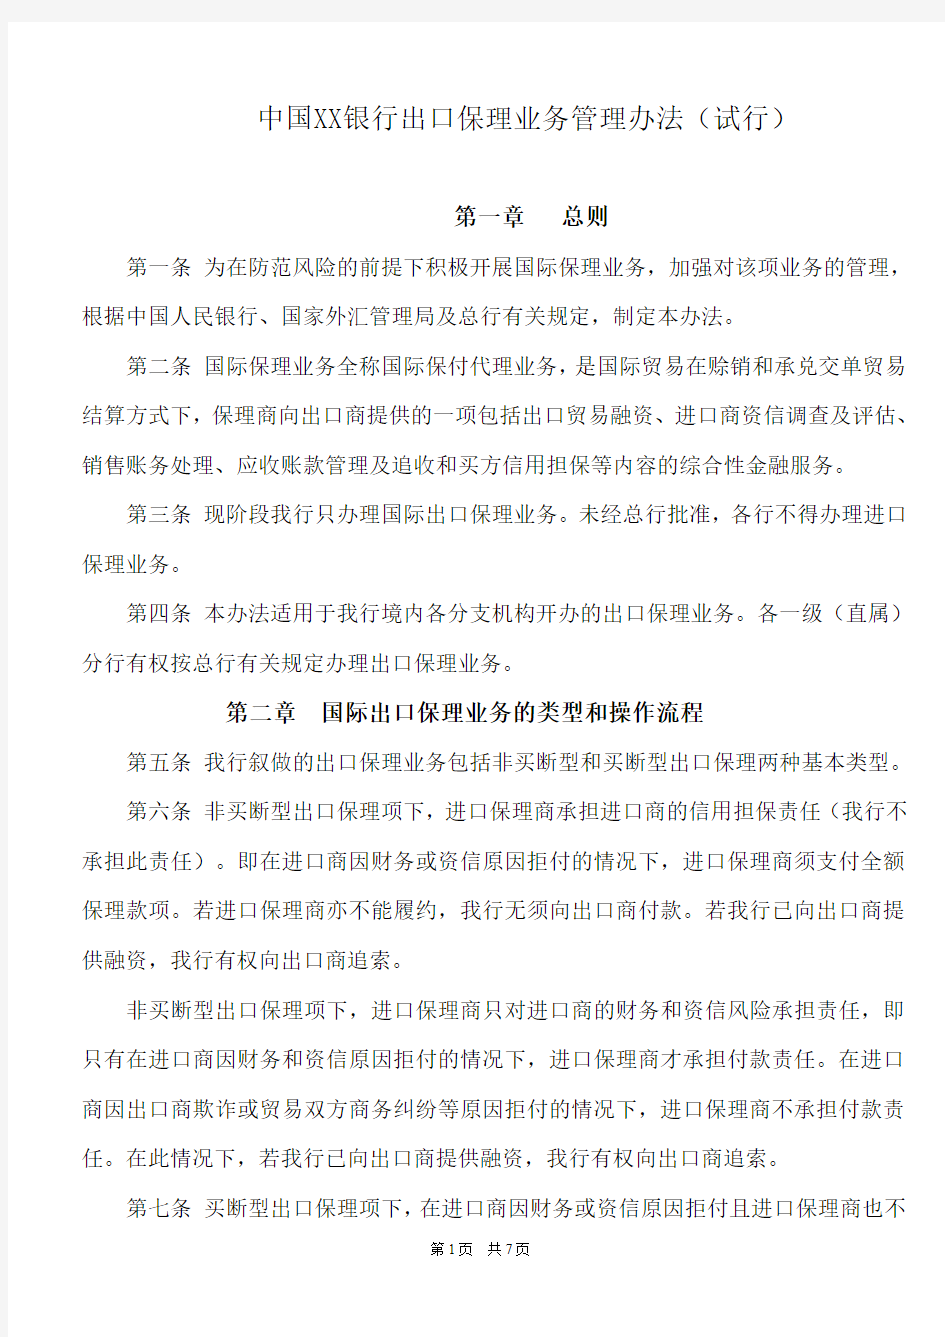 中国XX银行出口保理业务管理办法(试行)